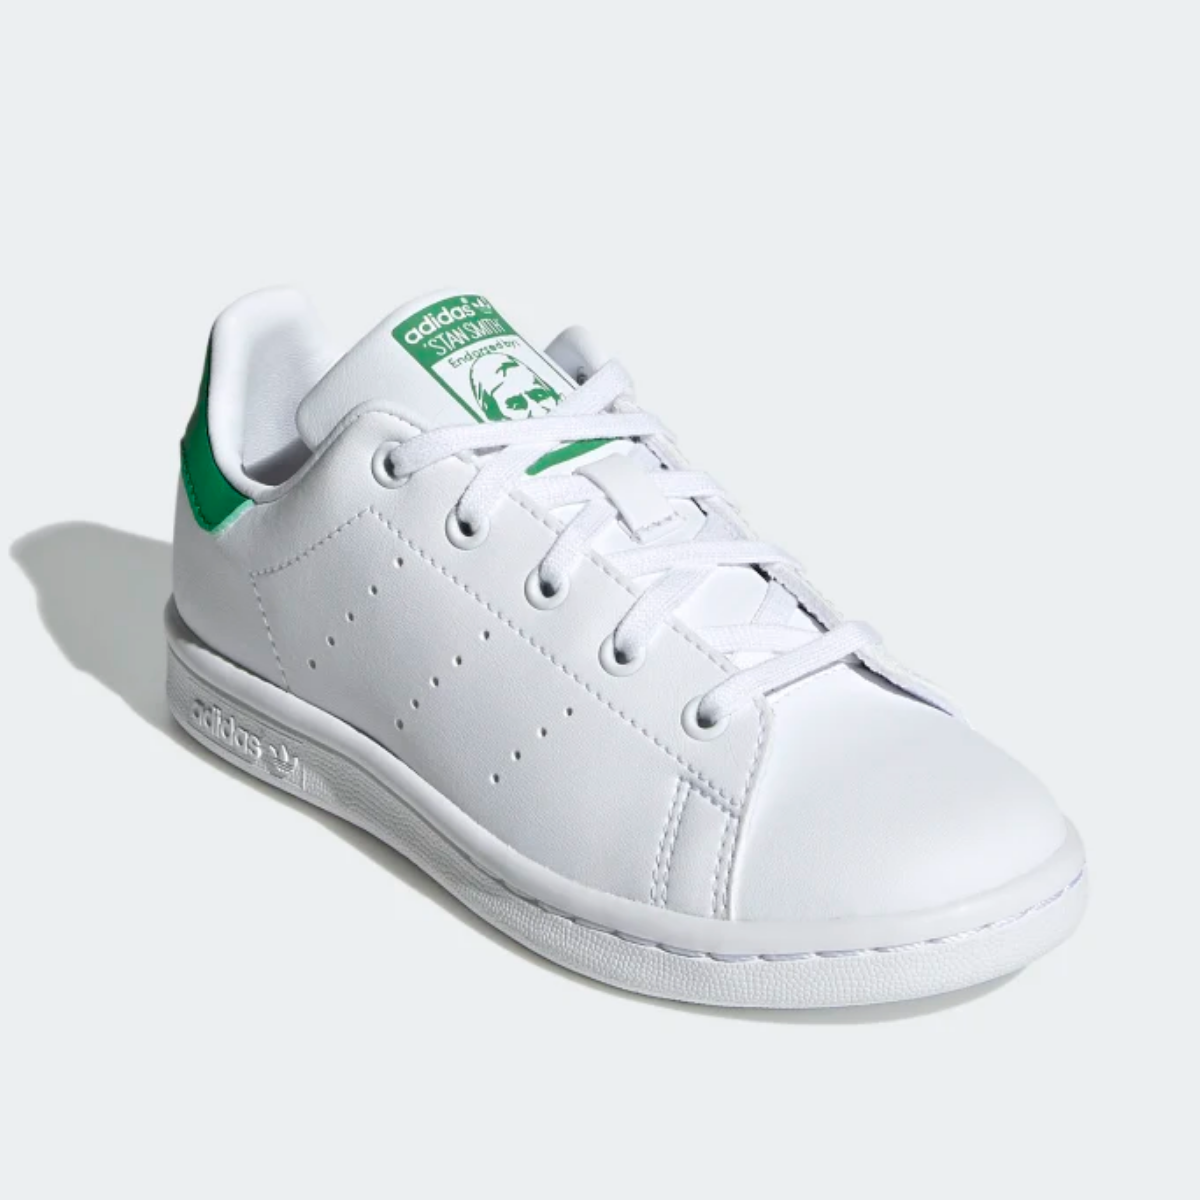 Adidas Stan Smith Cloud White/Green